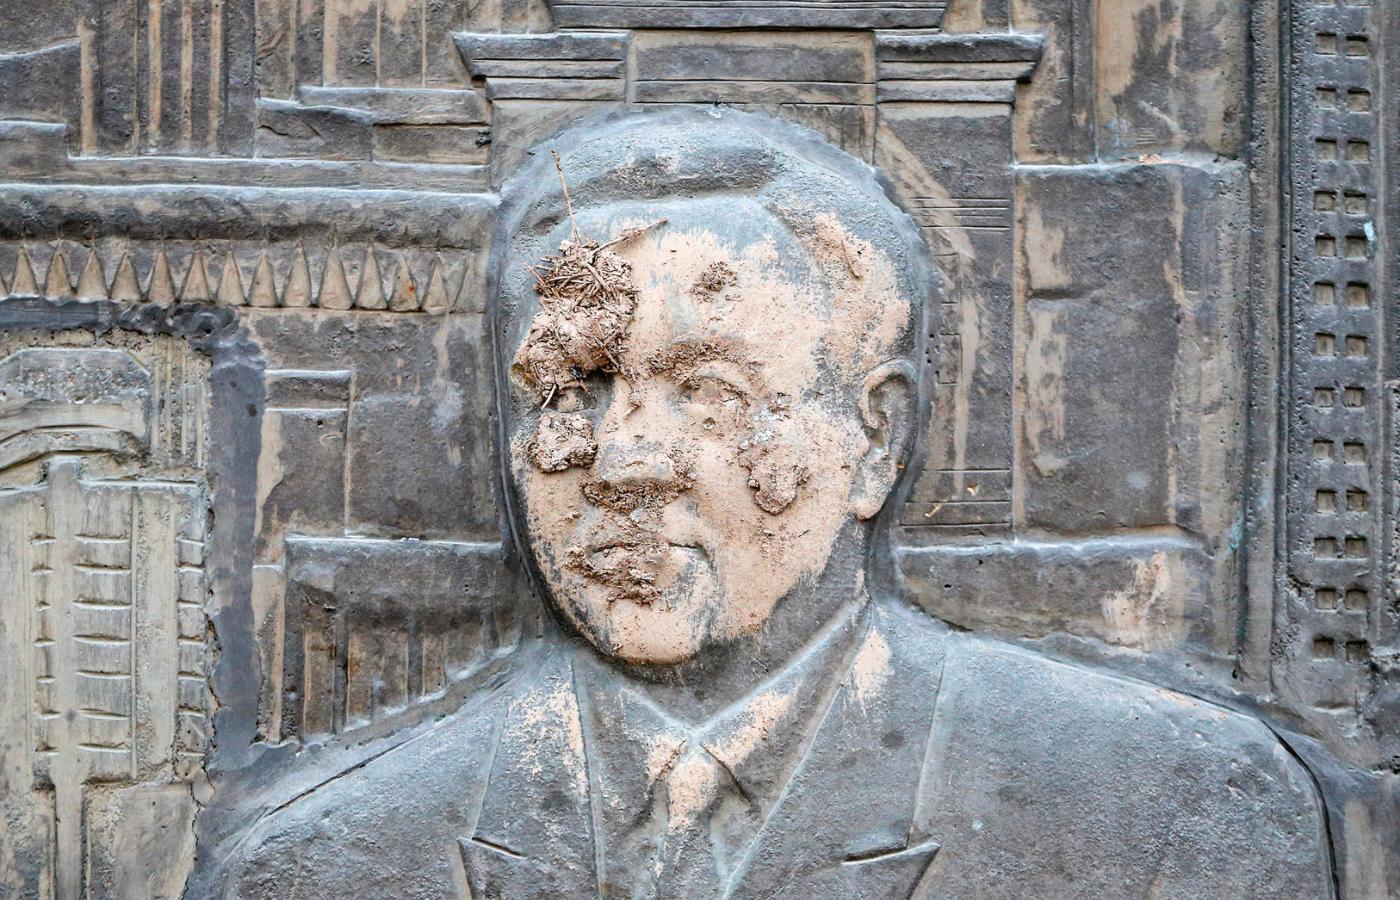 Ałmaty, obrzucona błotem płaskorzeźba przedstawiająca prezydenta Nazarbajewa.